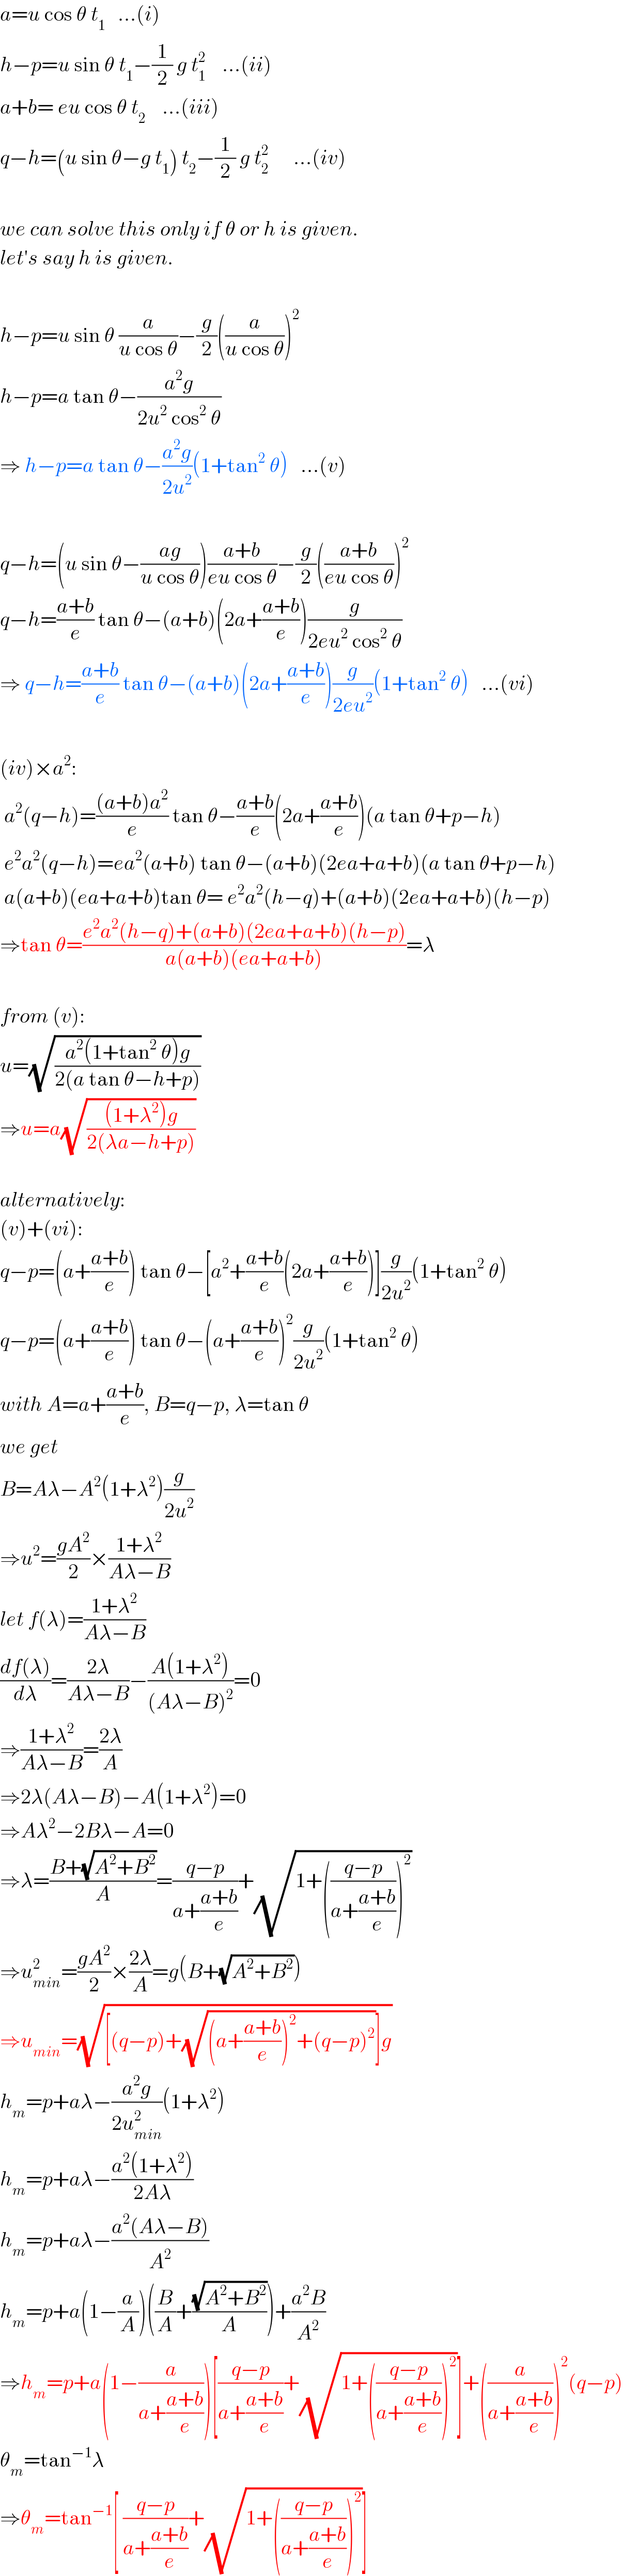 a=u cos θ t_1    ...(i)  h−p=u sin θ t_1 −(1/2) g t_1 ^2     ...(ii)  a+b= eu cos θ t_2     ...(iii)  q−h=(u sin θ−g t_1 ) t_2 −(1/2) g t_2 ^2       ...(iv)    we can solve this only if θ or h is given.  let′s say h is given.    h−p=u sin θ (a/(u cos θ))−(g/2)((a/(u cos θ)))^2   h−p=a tan θ−((a^2 g)/(2u^2  cos^2  θ))  ⇒ h−p=a tan θ−((a^2 g)/(2u^2 ))(1+tan^2  θ)   ...(v)    q−h=(u sin θ−((ag)/(u cos θ)))((a+b)/(eu cos θ))−(g/2)(((a+b)/(eu cos θ)))^2   q−h=((a+b)/e) tan θ−(a+b)(2a+((a+b)/e))(g/(2eu^2  cos^2  θ))  ⇒ q−h=((a+b)/e) tan θ−(a+b)(2a+((a+b)/e))(g/(2eu^2 ))(1+tan^2  θ)   ...(vi)    (iv)×a^2 :   a^2 (q−h)=(((a+b)a^2 )/e) tan θ−((a+b)/e)(2a+((a+b)/e))(a tan θ+p−h)   e^2 a^2 (q−h)=ea^2 (a+b) tan θ−(a+b)(2ea+a+b)(a tan θ+p−h)   a(a+b)(ea+a+b)tan θ= e^2 a^2 (h−q)+(a+b)(2ea+a+b)(h−p)  ⇒tan θ=((e^2 a^2 (h−q)+(a+b)(2ea+a+b)(h−p))/(a(a+b)(ea+a+b)))=λ    from (v):  u=(√((a^2 (1+tan^2  θ)g)/(2(a tan θ−h+p))))  ⇒u=a(√(((1+λ^2 )g)/(2(λa−h+p))))    alternatively:  (v)+(vi):  q−p=(a+((a+b)/e)) tan θ−[a^2 +((a+b)/e)(2a+((a+b)/e))](g/(2u^2 ))(1+tan^2  θ)  q−p=(a+((a+b)/e)) tan θ−(a+((a+b)/e))^2 (g/(2u^2 ))(1+tan^2  θ)  with A=a+((a+b)/e), B=q−p, λ=tan θ  we get  B=Aλ−A^2 (1+λ^2 )(g/(2u^2 ))  ⇒u^2 =((gA^2 )/2)×((1+λ^2 )/(Aλ−B))  let f(λ)=((1+λ^2 )/(Aλ−B))  ((df(λ))/dλ)=((2λ)/(Aλ−B))−((A(1+λ^2 ))/((Aλ−B)^2 ))=0  ⇒((1+λ^2 )/(Aλ−B))=((2λ)/A)  ⇒2λ(Aλ−B)−A(1+λ^2 )=0  ⇒Aλ^2 −2Bλ−A=0  ⇒λ=((B+(√(A^2 +B^2 )))/A)=((q−p)/(a+((a+b)/e)))+(√(1+(((q−p)/(a+((a+b)/e))))^2 ))  ⇒u_(min) ^2 =((gA^2 )/2)×((2λ)/A)=g(B+(√(A^2 +B^2 )))  ⇒u_(min) =(√([(q−p)+(√((a+((a+b)/e))^2 +(q−p)^2 ))]g))  h_m =p+aλ−((a^2 g)/(2u_(min) ^2 ))(1+λ^2 )  h_m =p+aλ−((a^2 (1+λ^2 ))/(2Aλ))  h_m =p+aλ−((a^2 (Aλ−B))/A^2 )  h_m =p+a(1−(a/A))((B/A)+((√(A^2 +B^2 ))/A))+((a^2 B)/A^2 )  ⇒h_m =p+a(1−(a/(a+((a+b)/e))))[((q−p)/(a+((a+b)/e)))+(√(1+(((q−p)/(a+((a+b)/e))))^2 ))]+((a/(a+((a+b)/e))))^2 (q−p)  θ_m =tan^(−1) λ  ⇒θ_m =tan^(−1) [ ((q−p)/(a+((a+b)/e)))+(√(1+(((q−p)/(a+((a+b)/e))))^2 ))]  